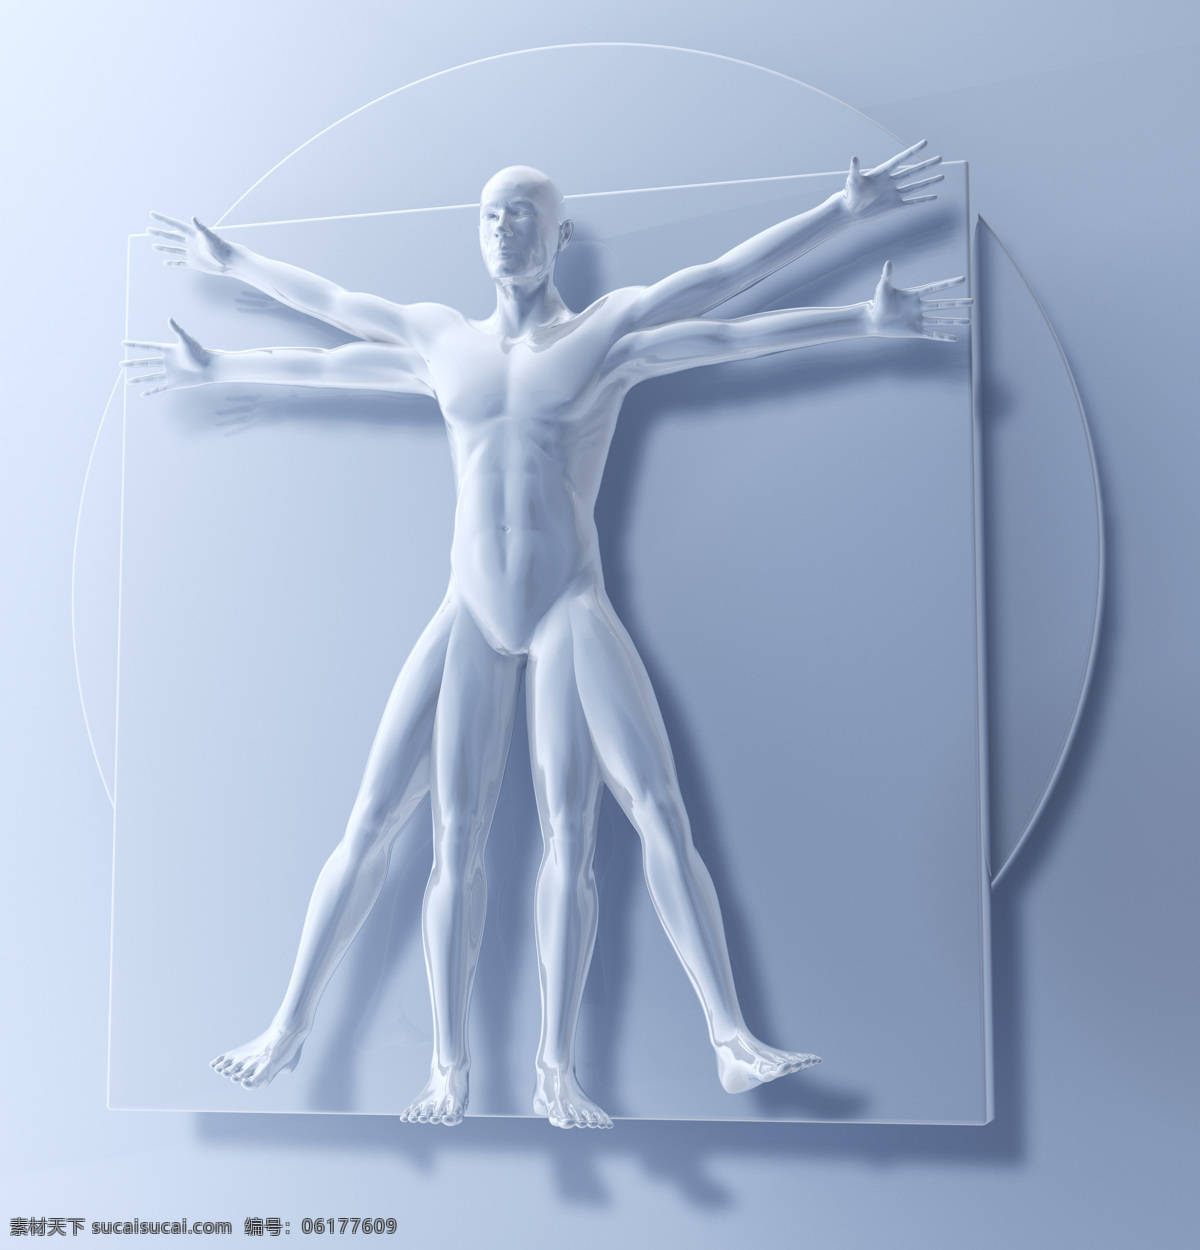 人体 结构 模型 人体结构 医学 医疗 科学研究 科技图片 现代科技